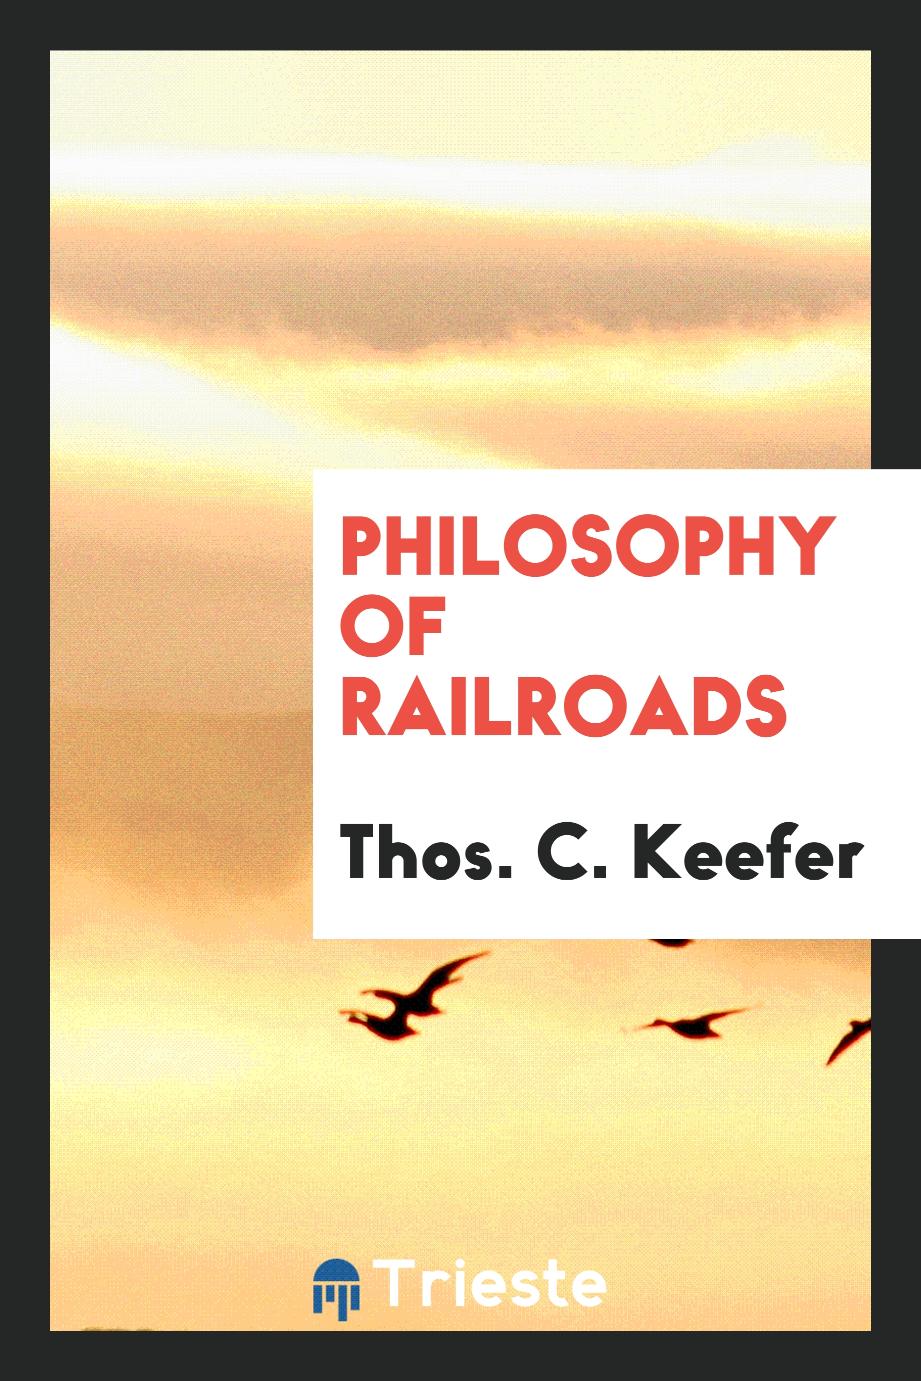 Philosophy of railroads